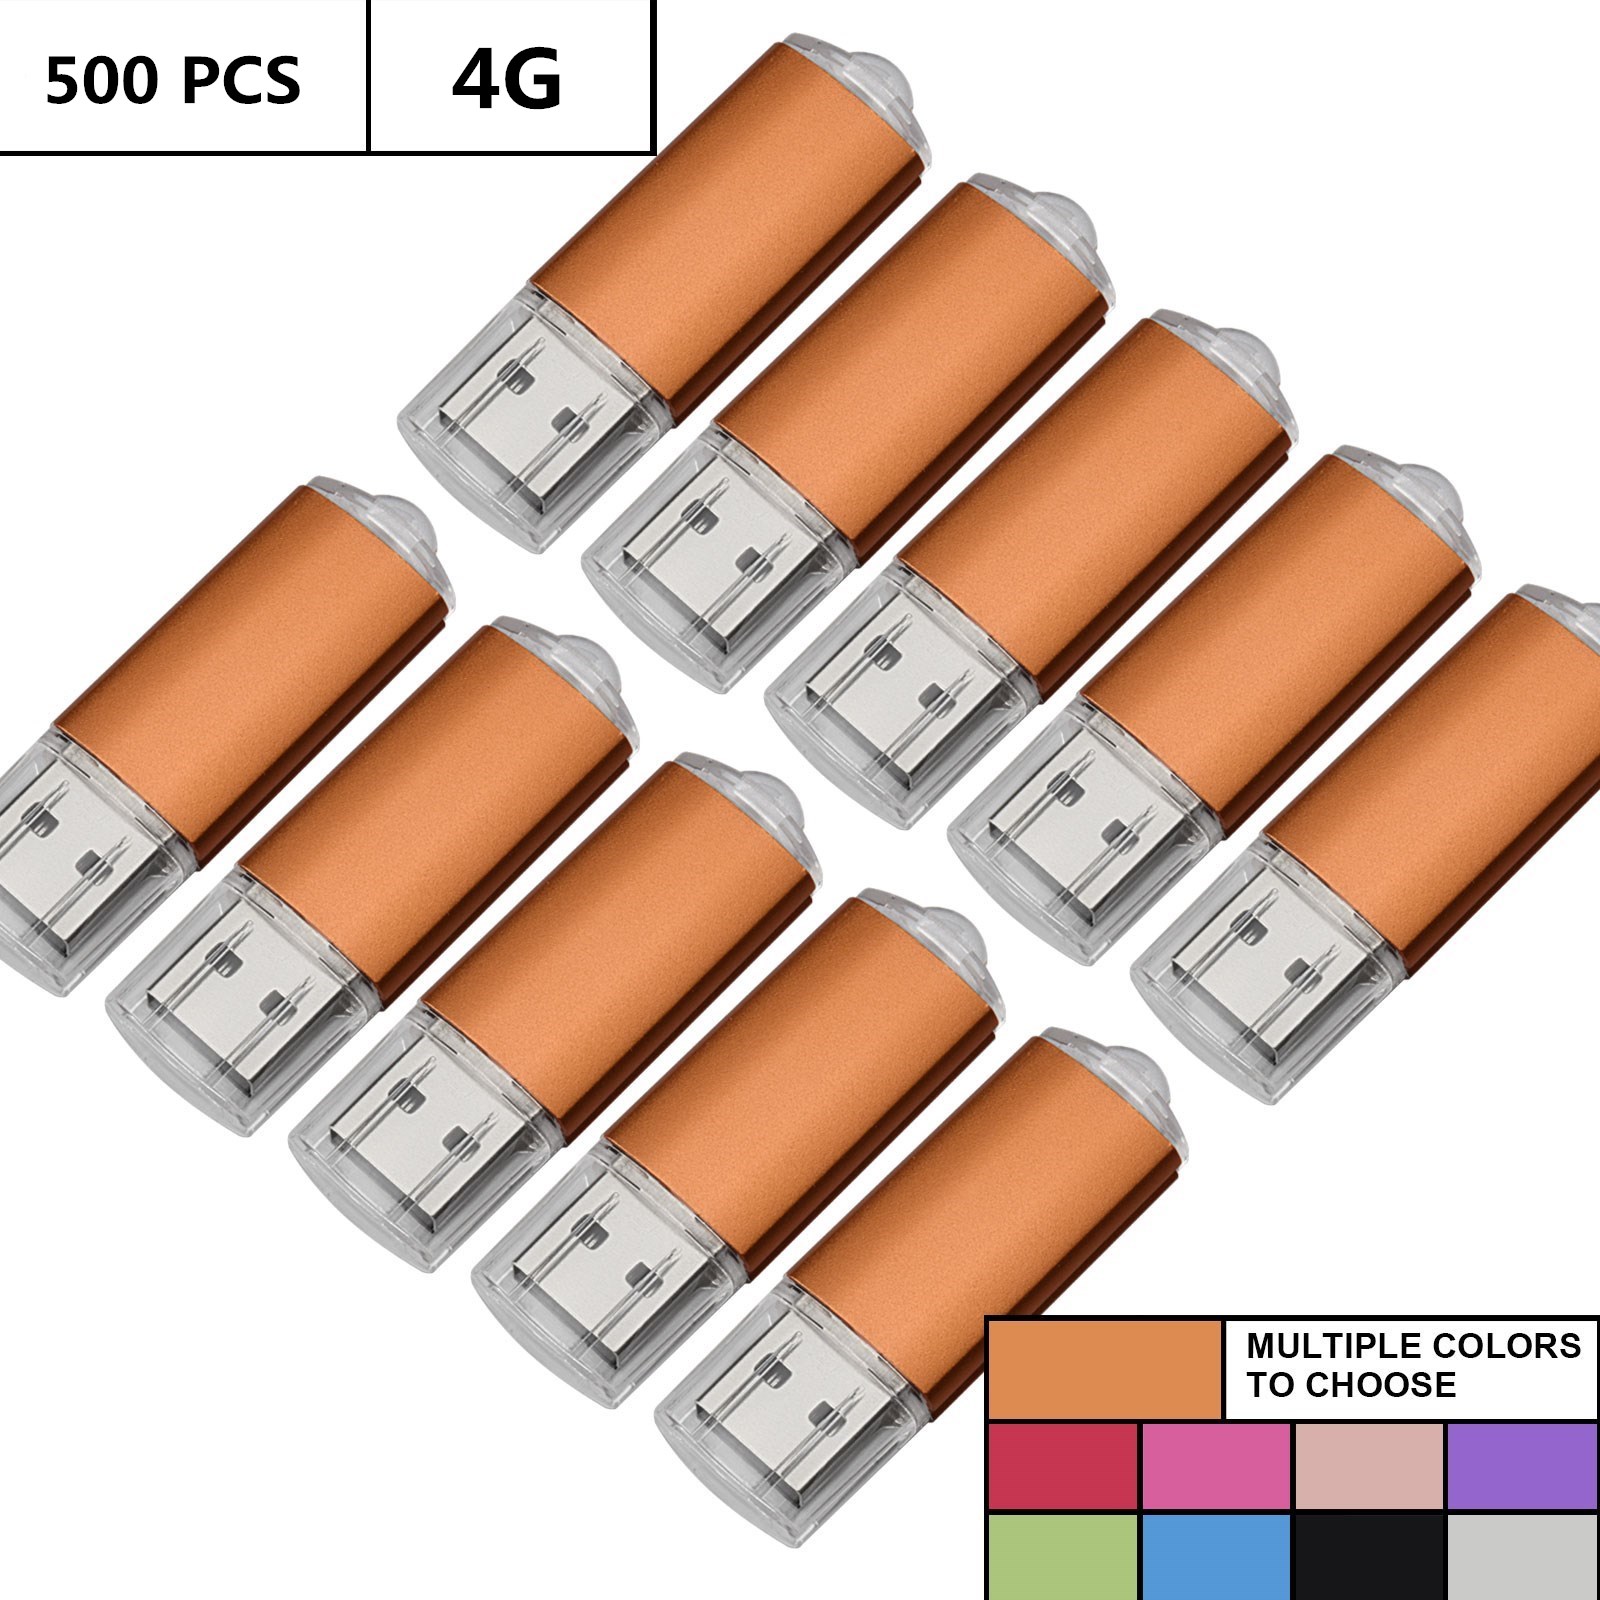 Toptan Toplu 500pcs 4GB USB Flash Sürücüler Dikdörtgen Flash Kalem Sürücüleri Bellek Çubukları Bilgisayar MacBook LED Göstergesi U Disk için Başparmak Depolama